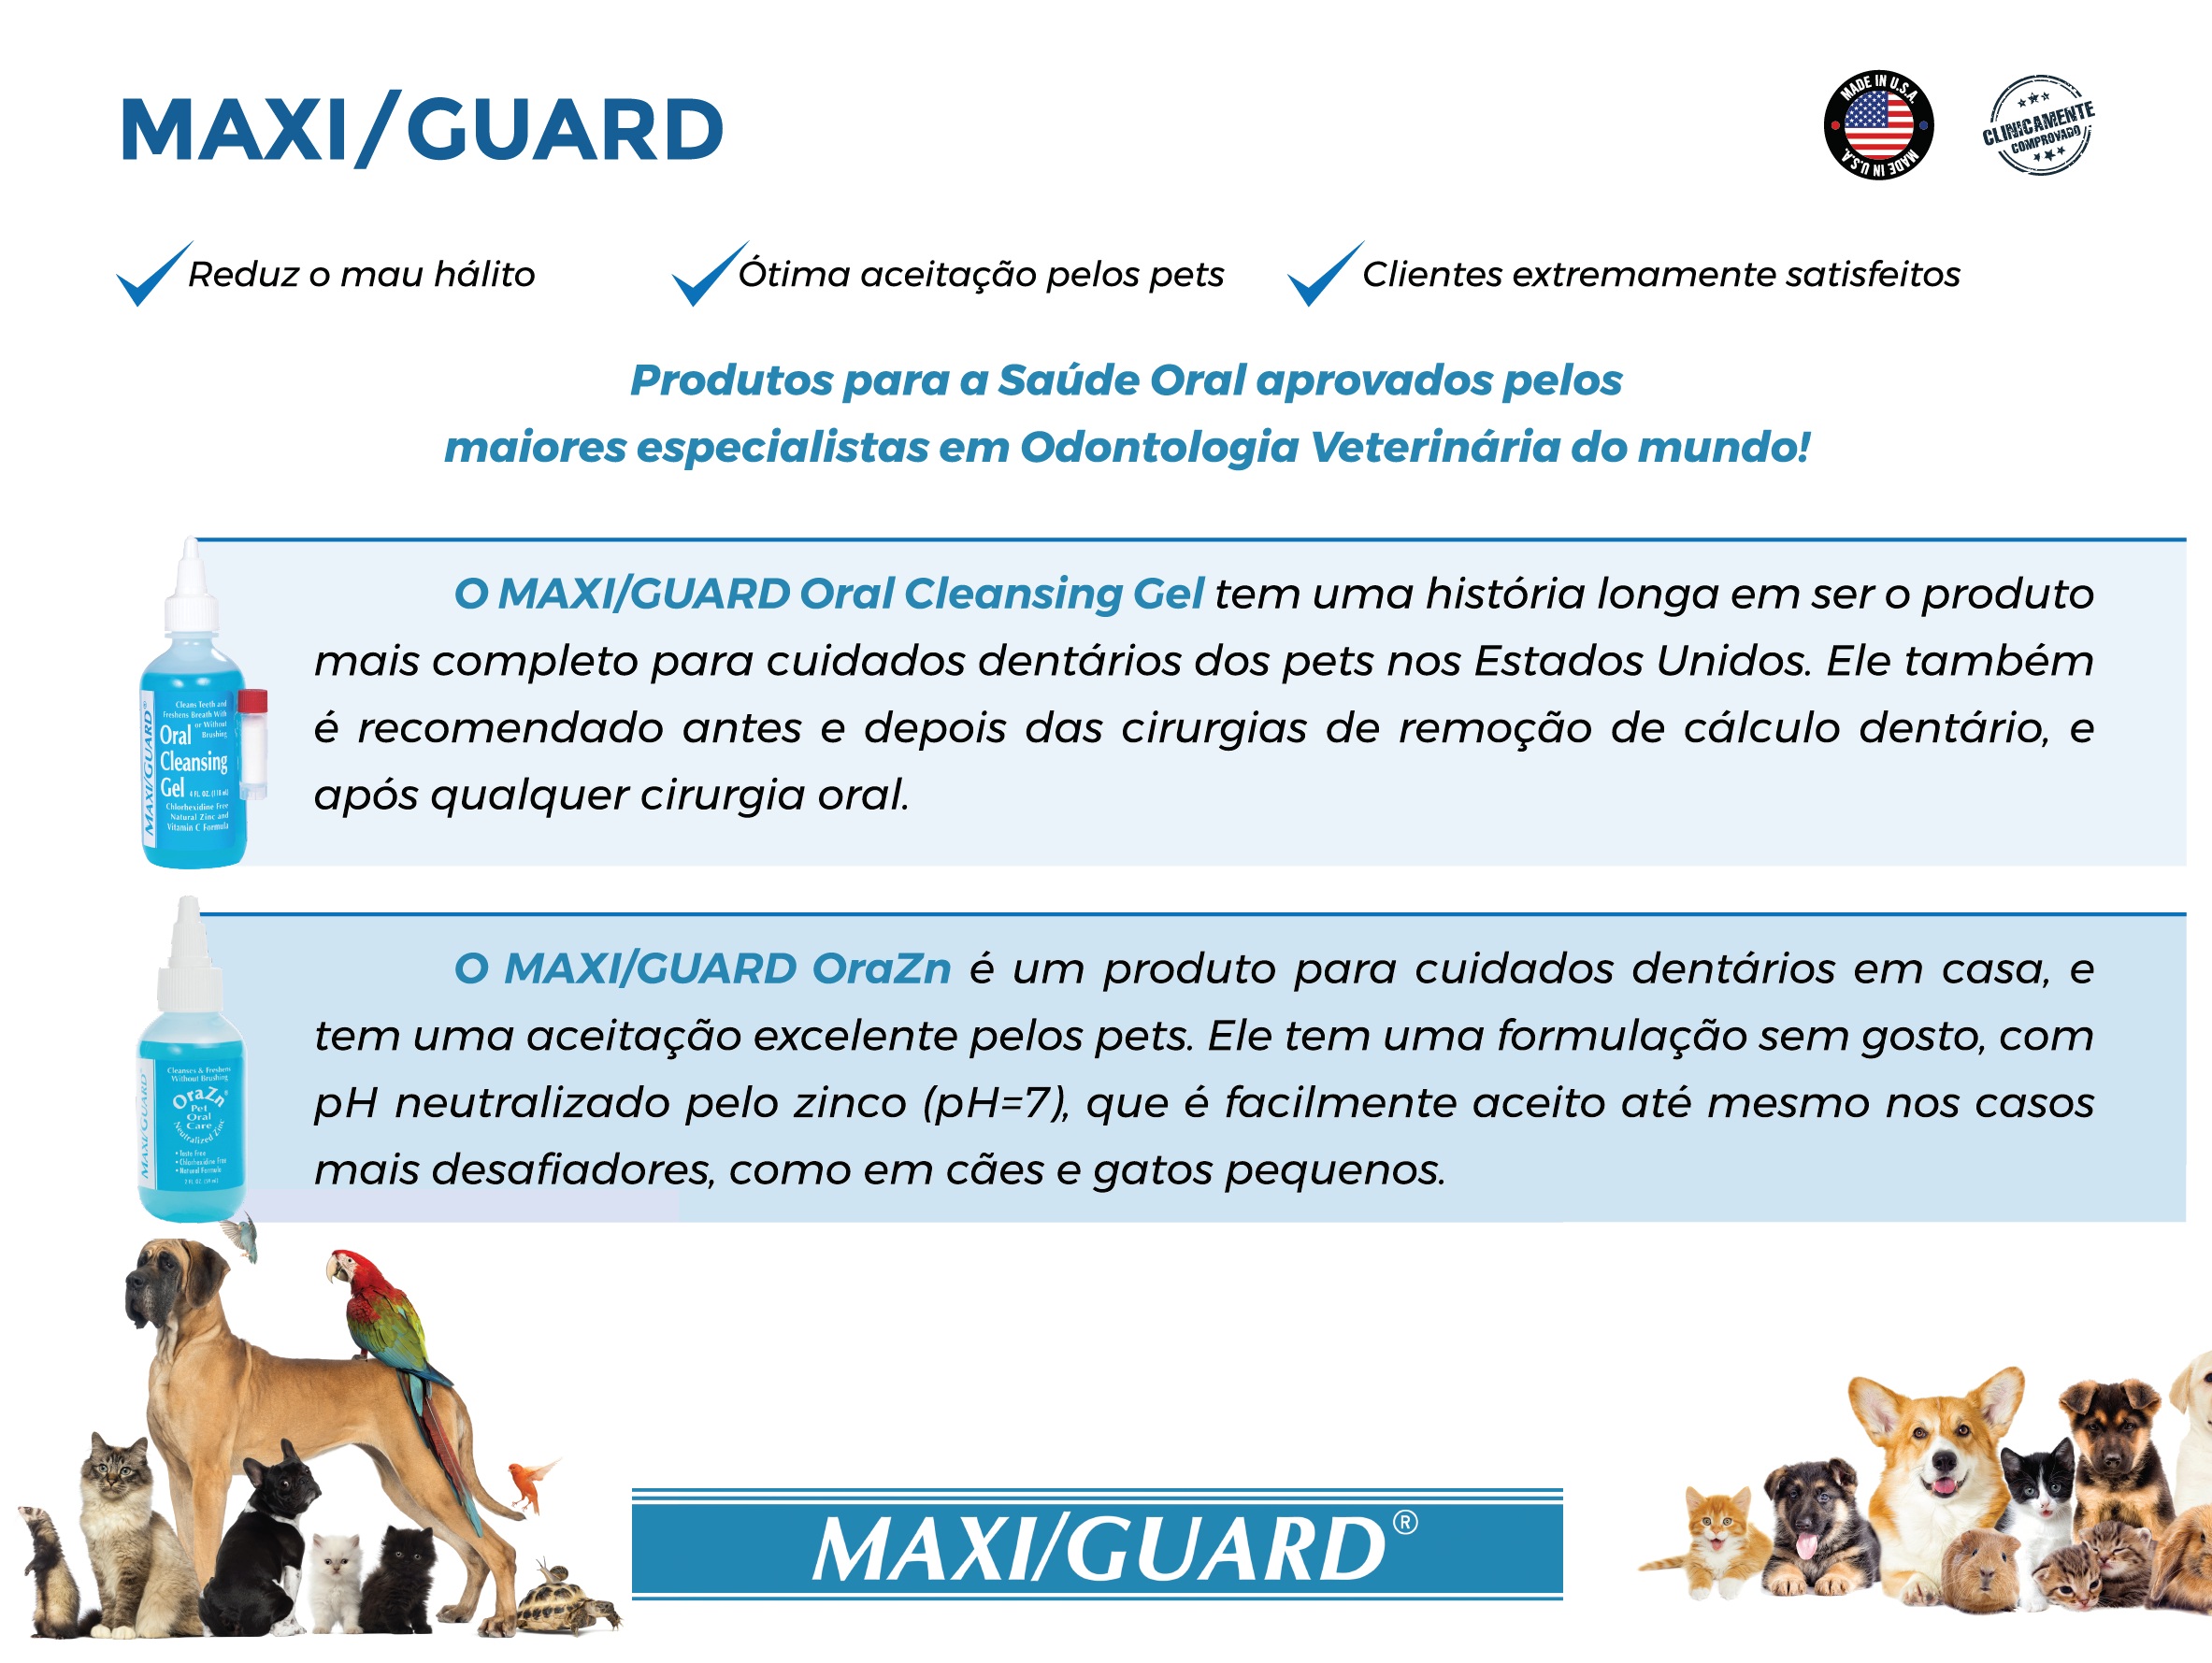 Maxi/Guard